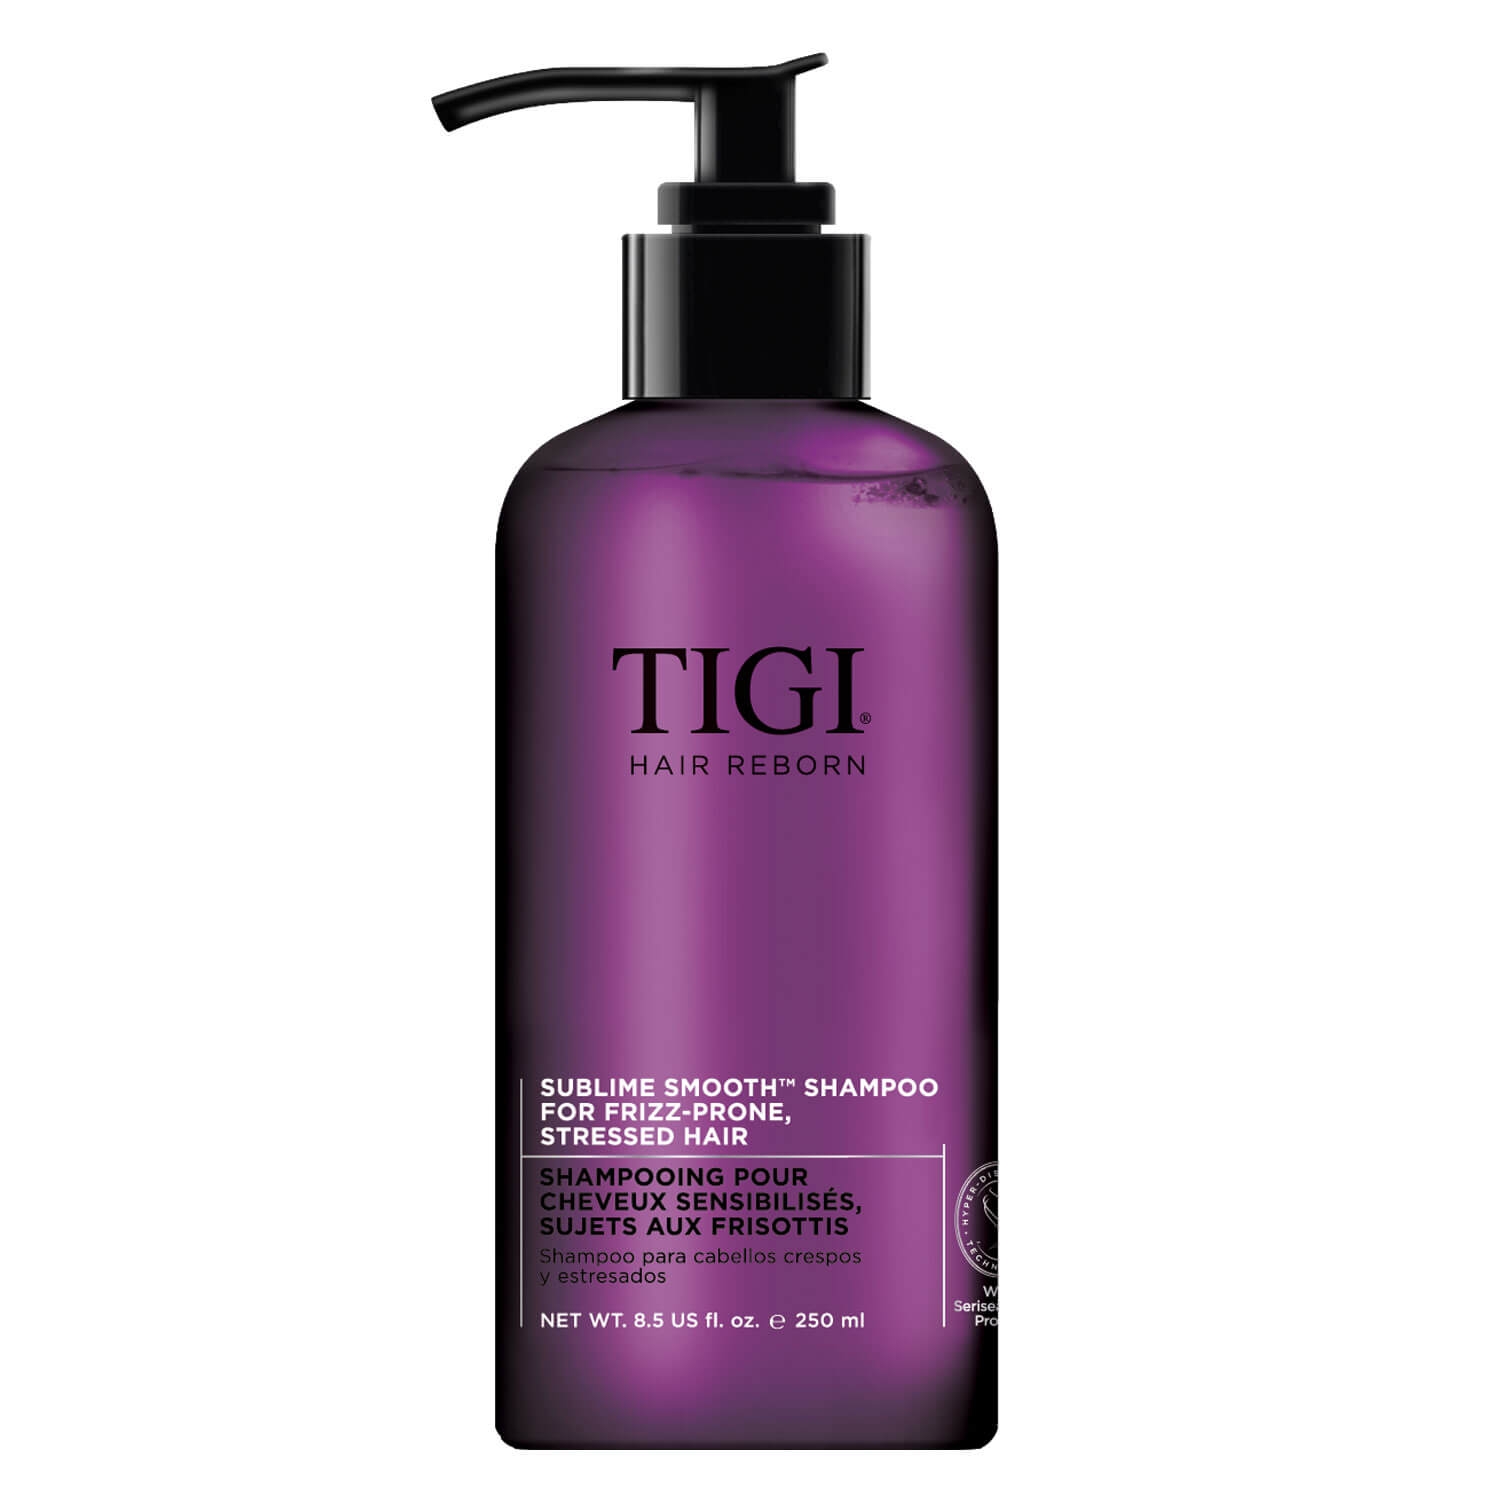 Produktbild von Hair Reborn Serenity - Sublime Smooth Shampoo